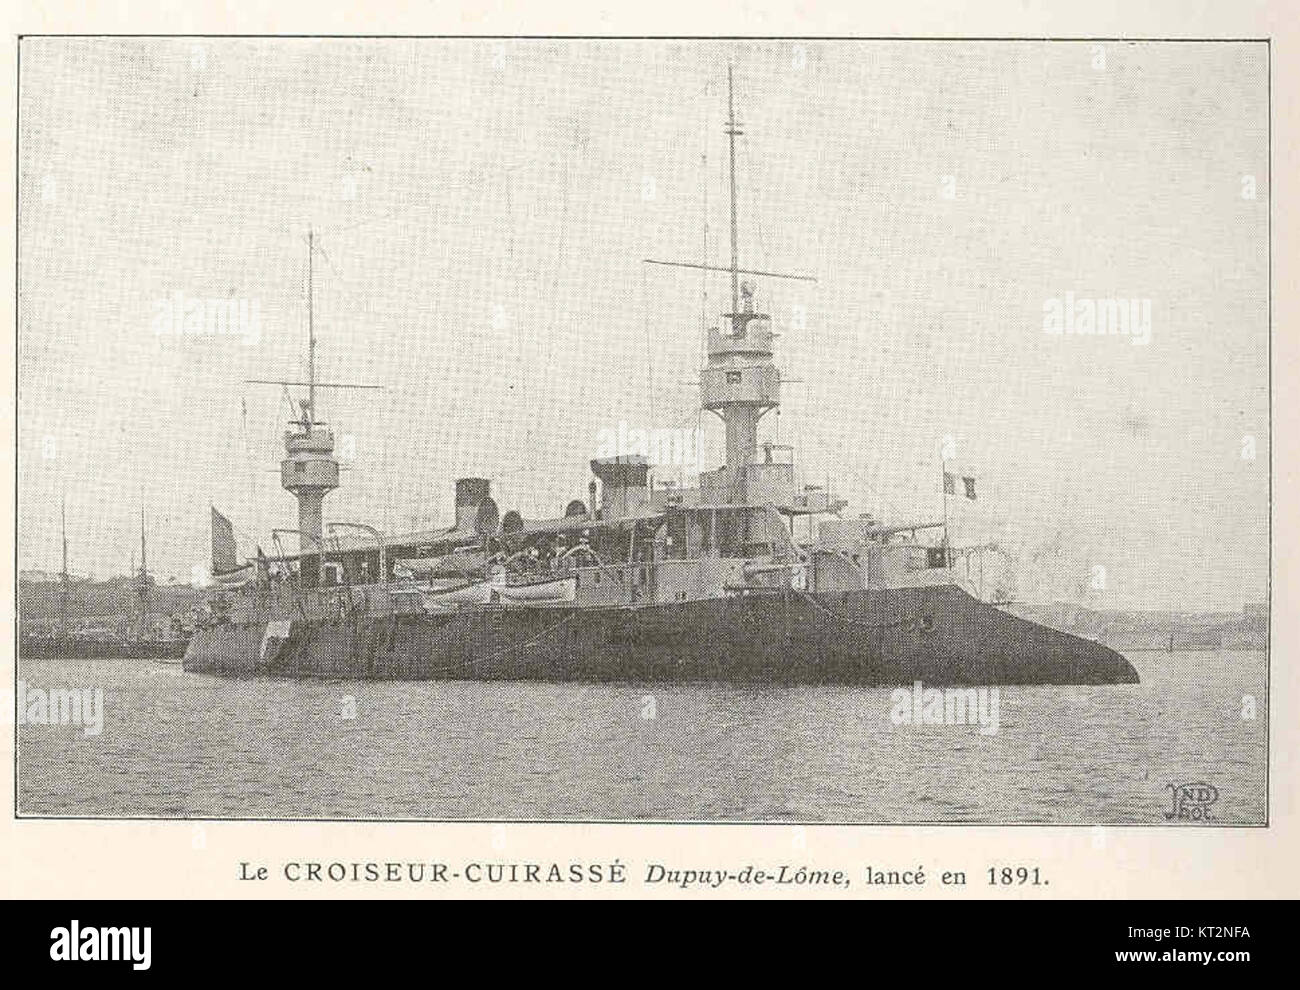 37086 Croiseur-Cuirasse Dupuy-de-Lome, lance en 1891 Stock Photo - Alamy